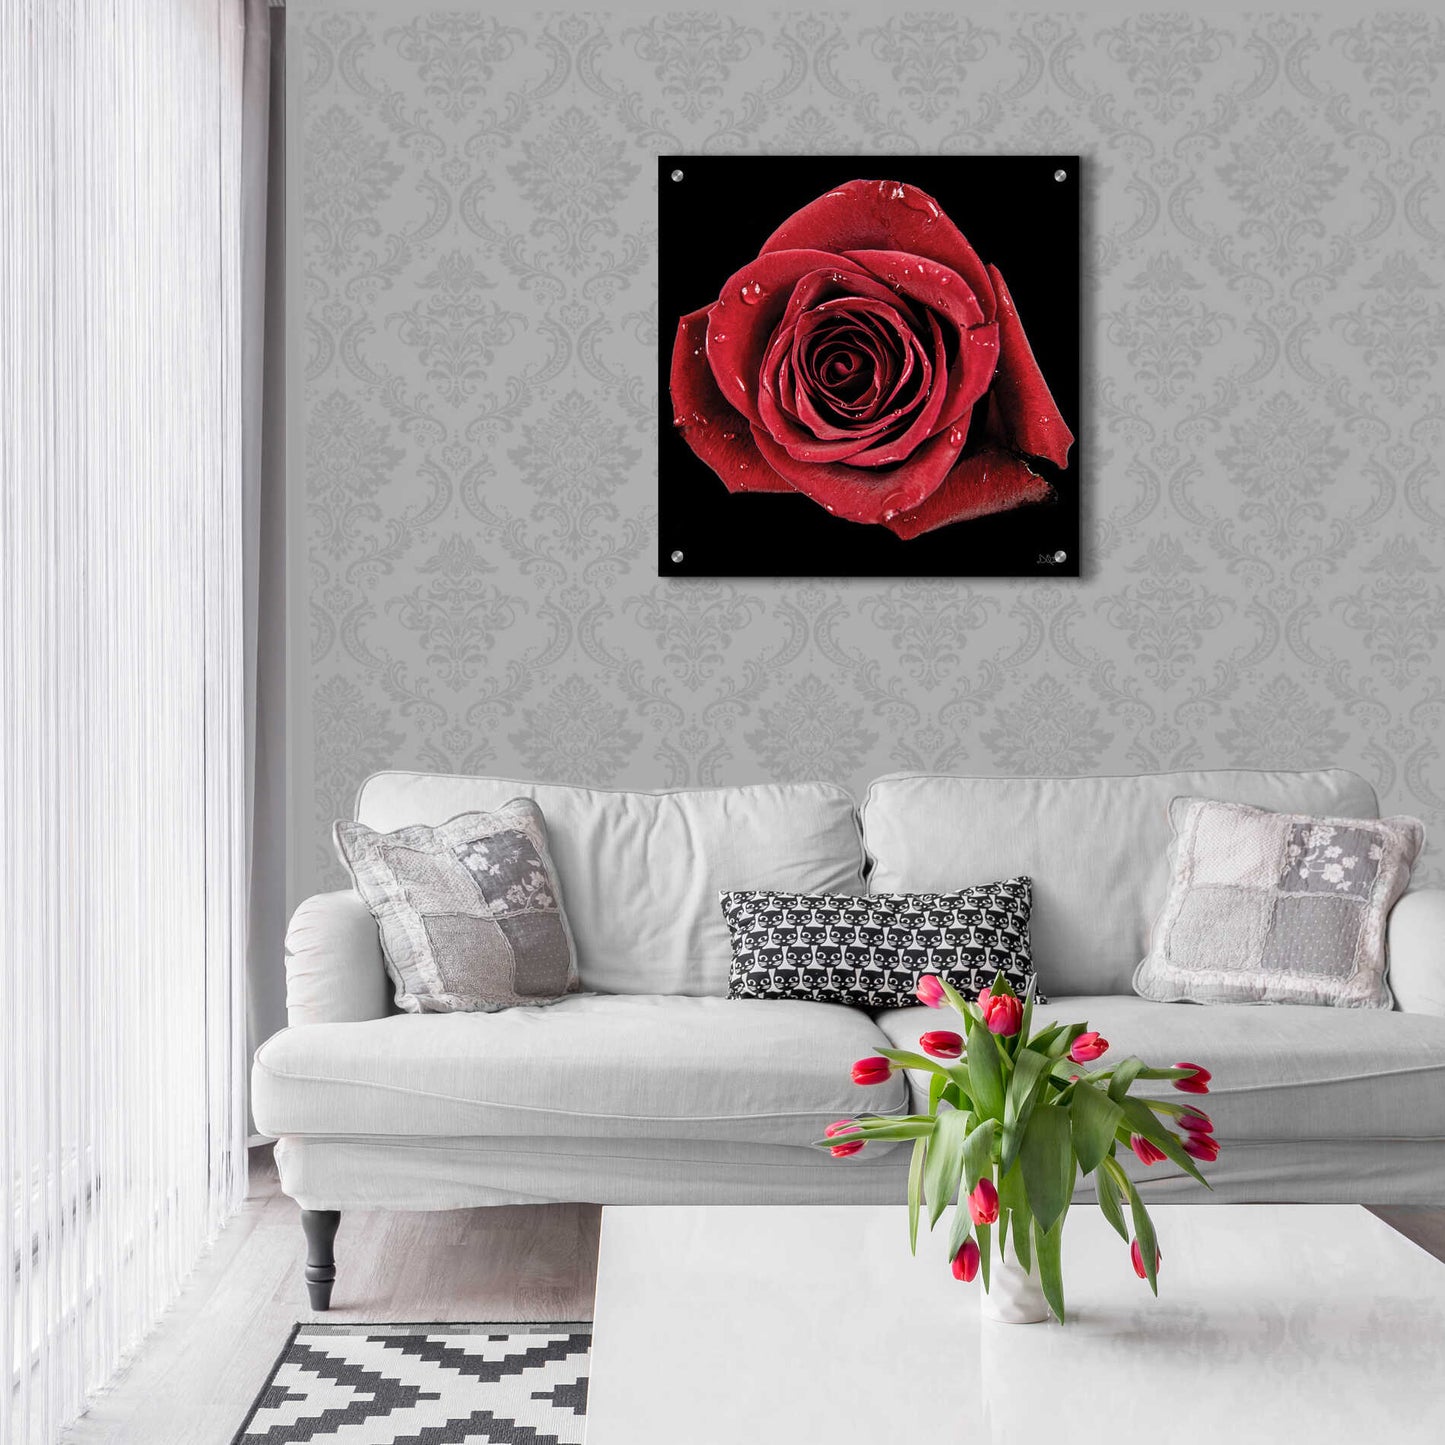 Epic Art 'Broken Heart Rose' by Donnie Quillen, Acrylic Glass Wall Art,24x24